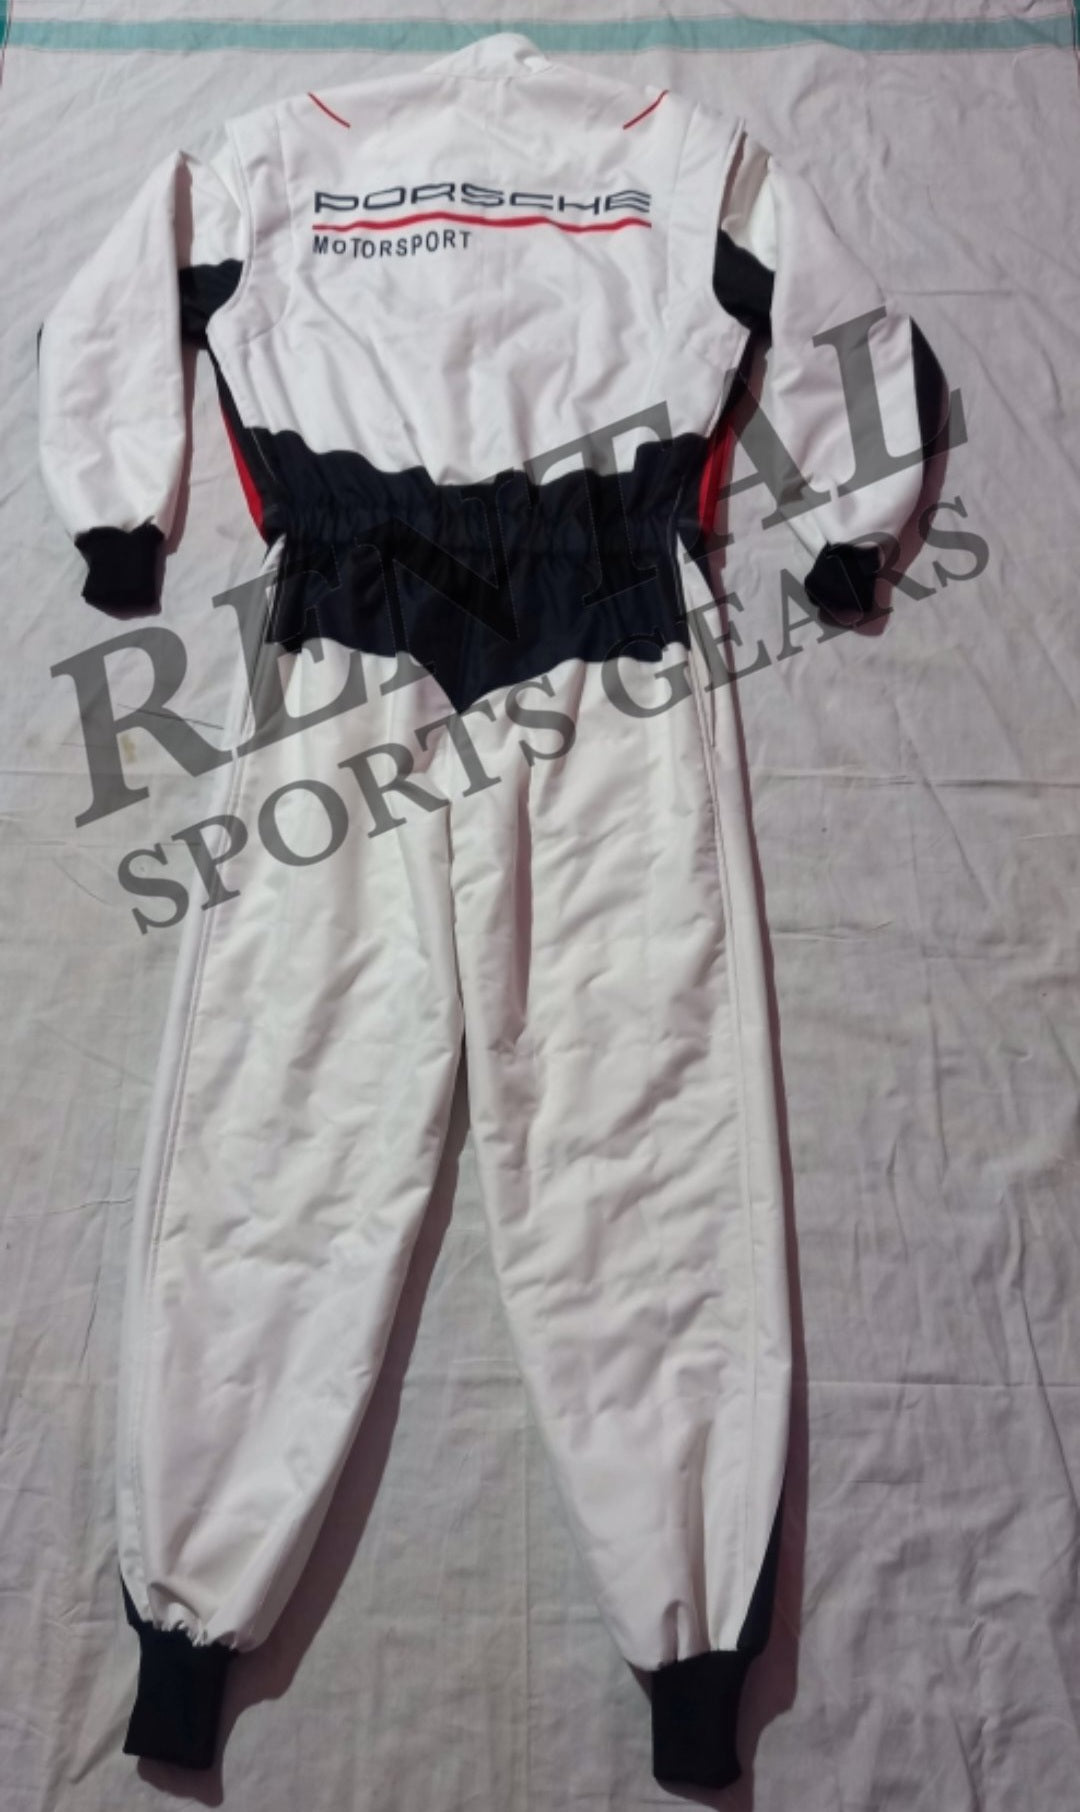 Porsche Motorsport Stand 21 Race Suit - F1 Kart Race Suit